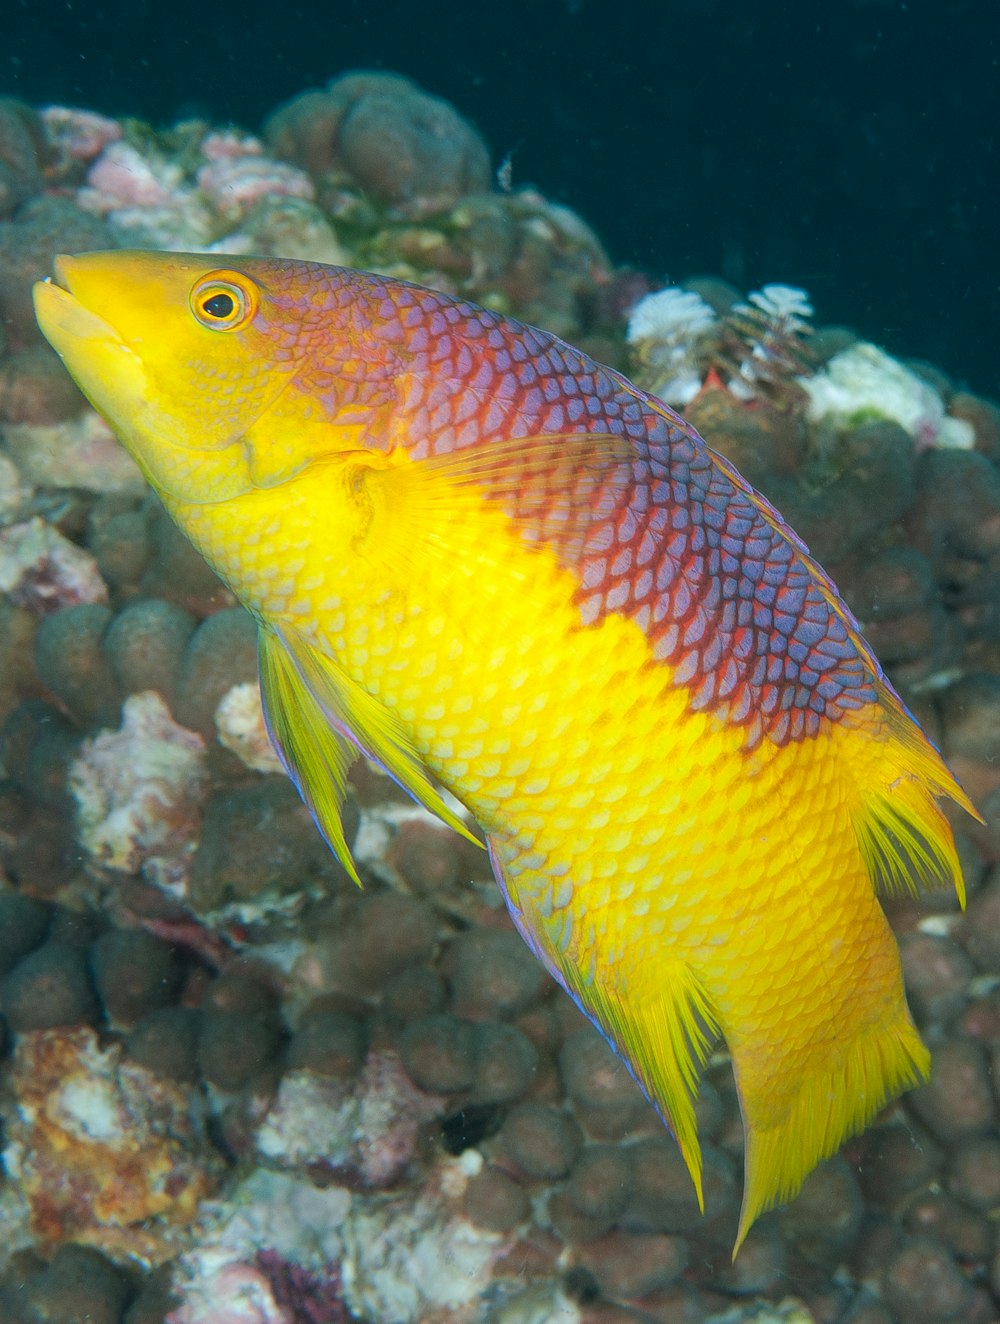 pesci gialli e rossi nell'acquario